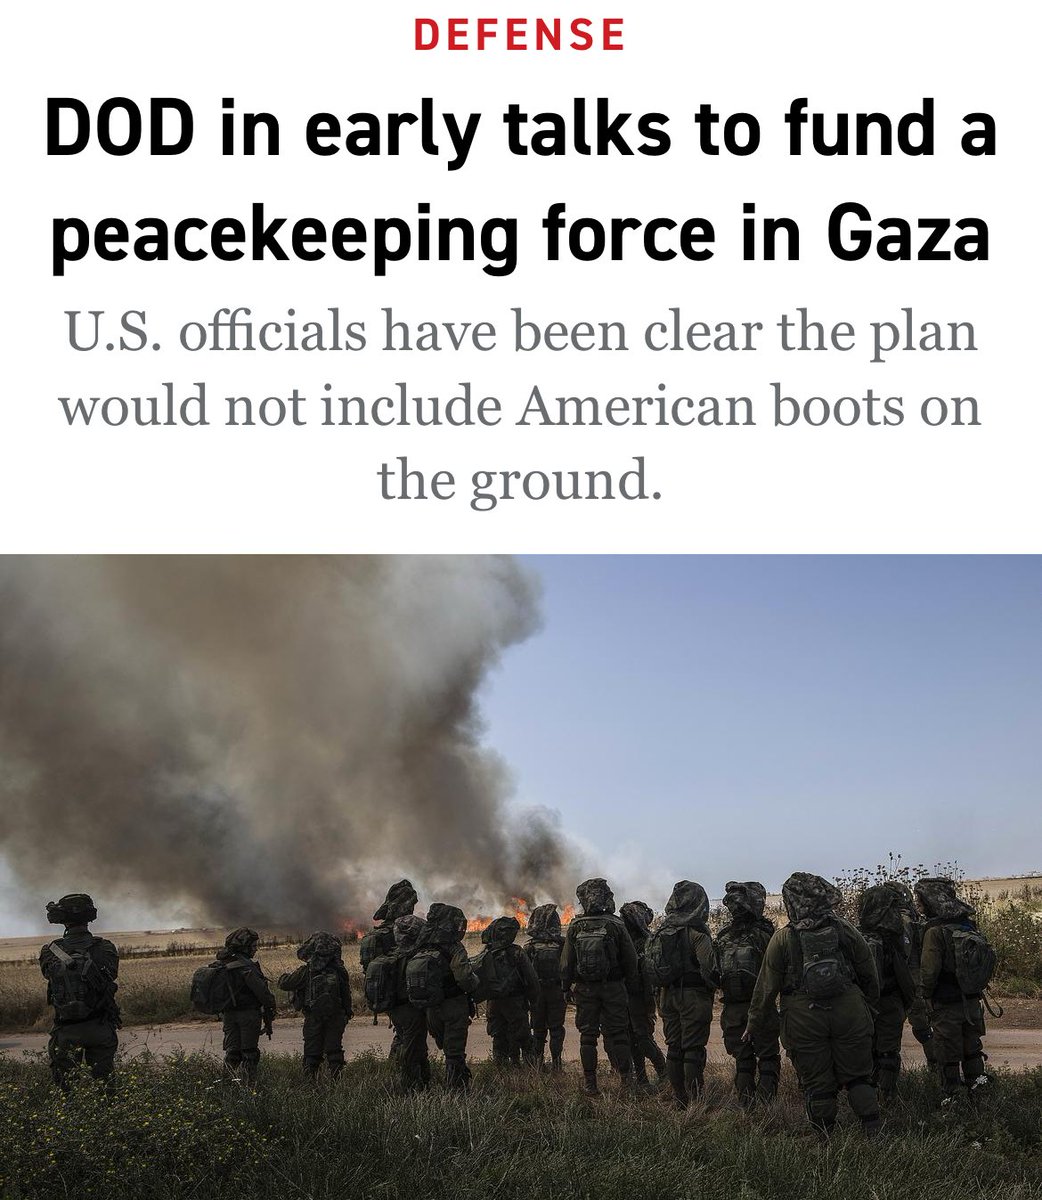 Les Americains disposés a financer une opération de maintien de la paix a Gaza. Mais pas question d'y deployer les'boys'. Details dans ⁦@politico⁩.